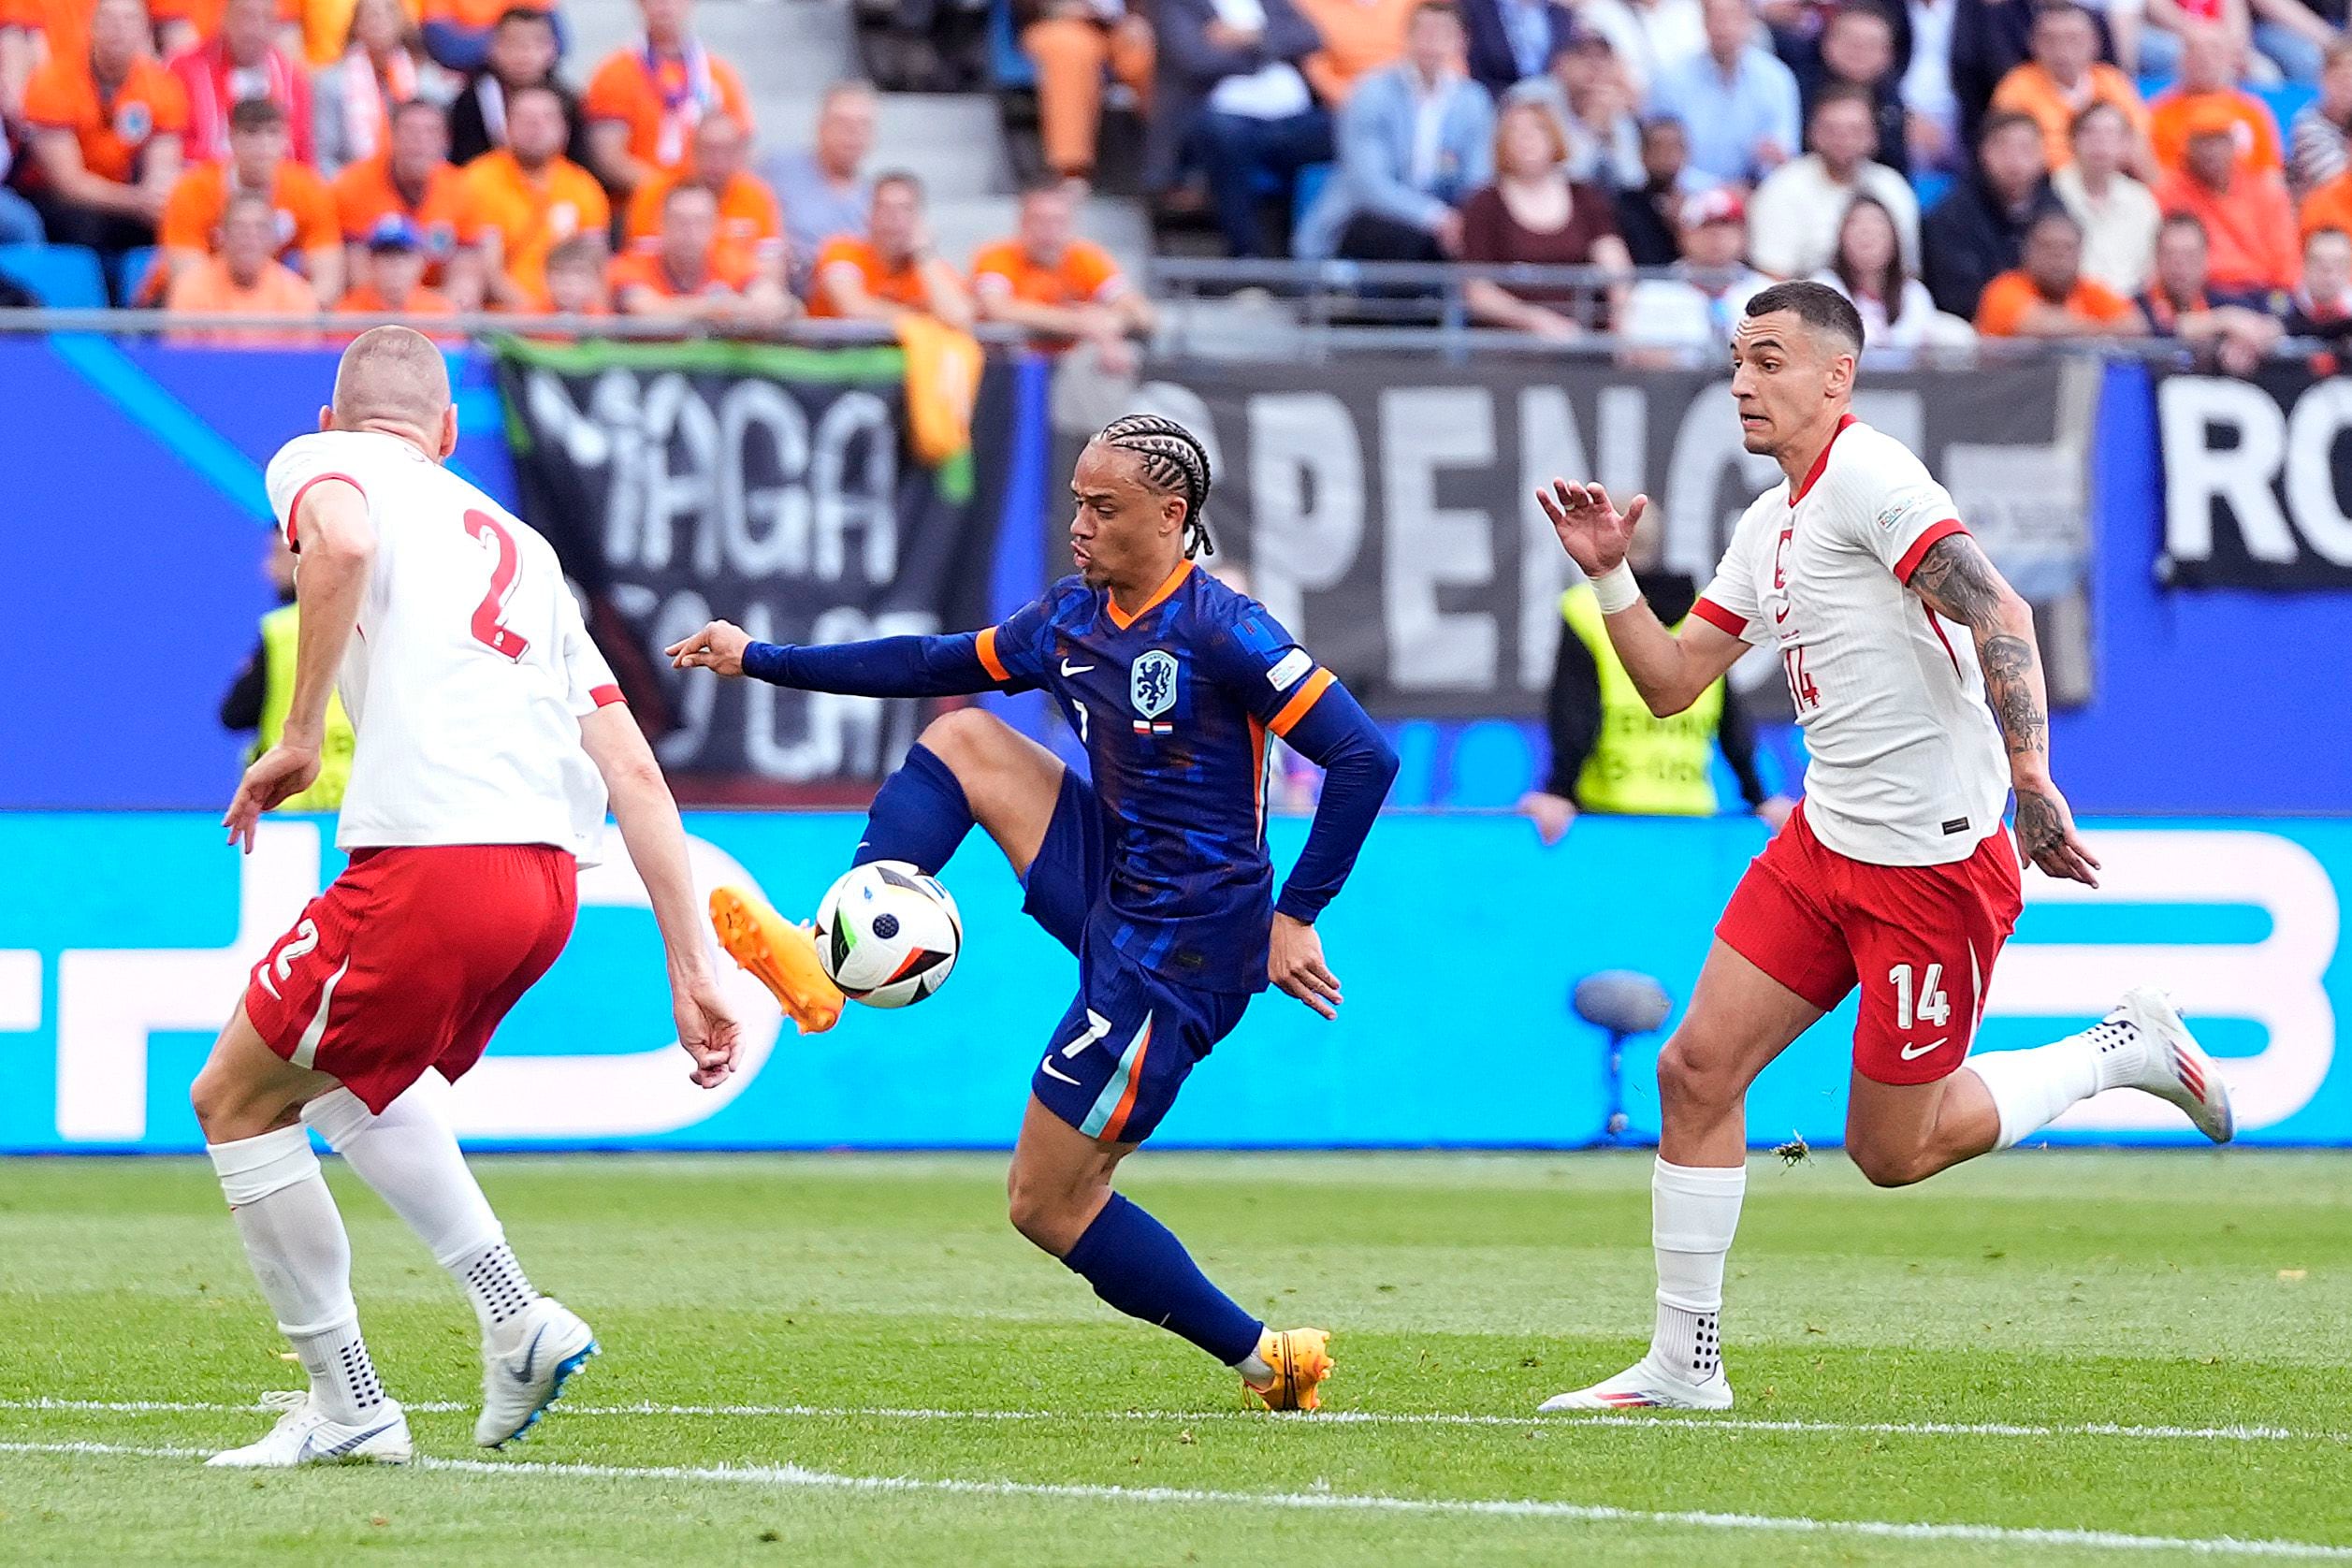 Países Bajos, que vistió de azul ante Polonia, arrancó con victoria 2-1 la Eurocopa. Xavi Simons intentó controlar la pelota ante la marca de los polacos. (X de Uefa.com en español).